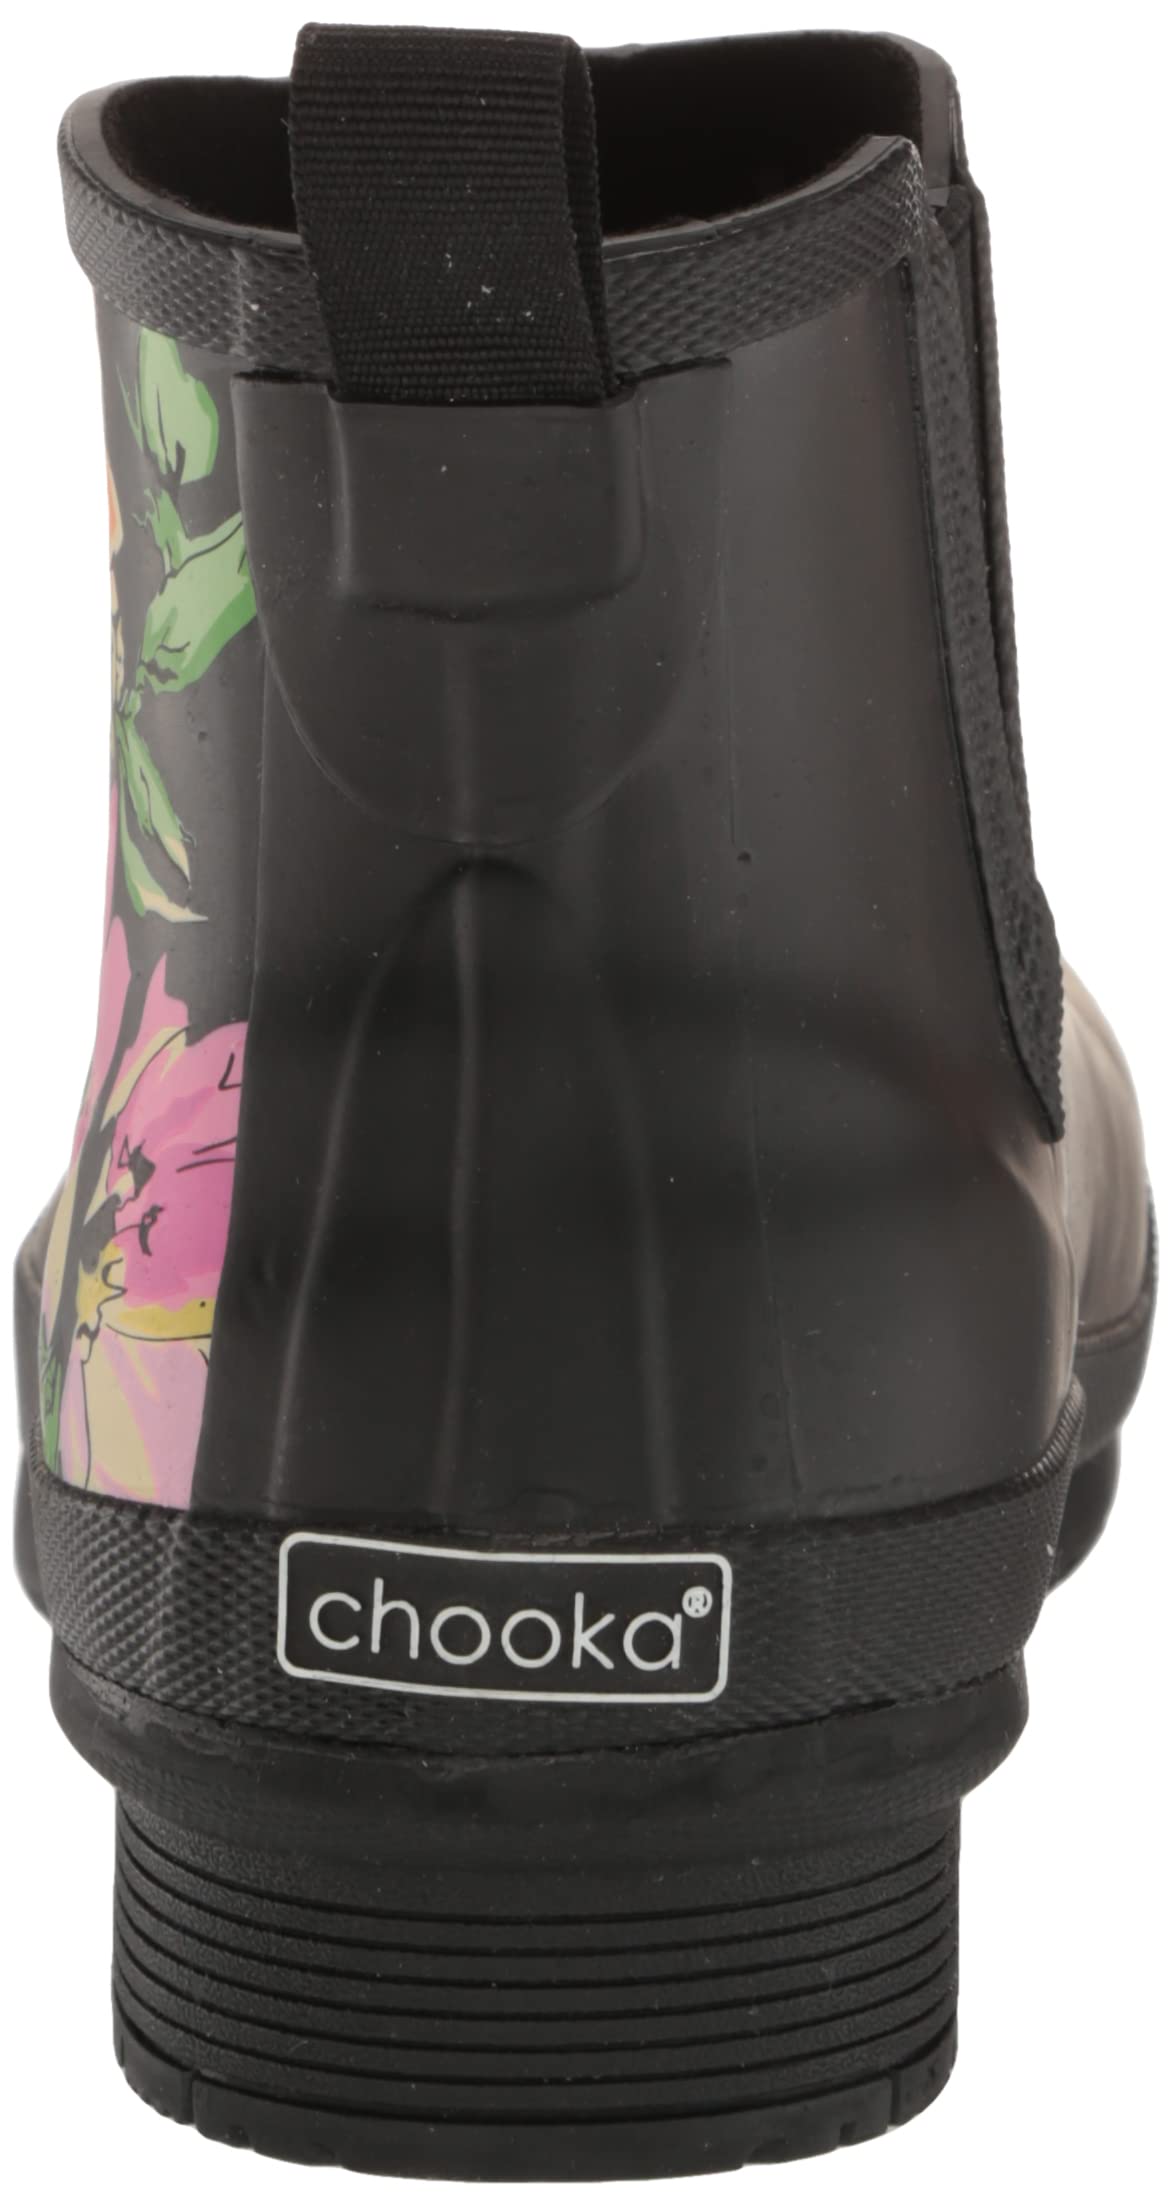 Chooka Women's Waterproof Chelsea Bouquet Boot Rain